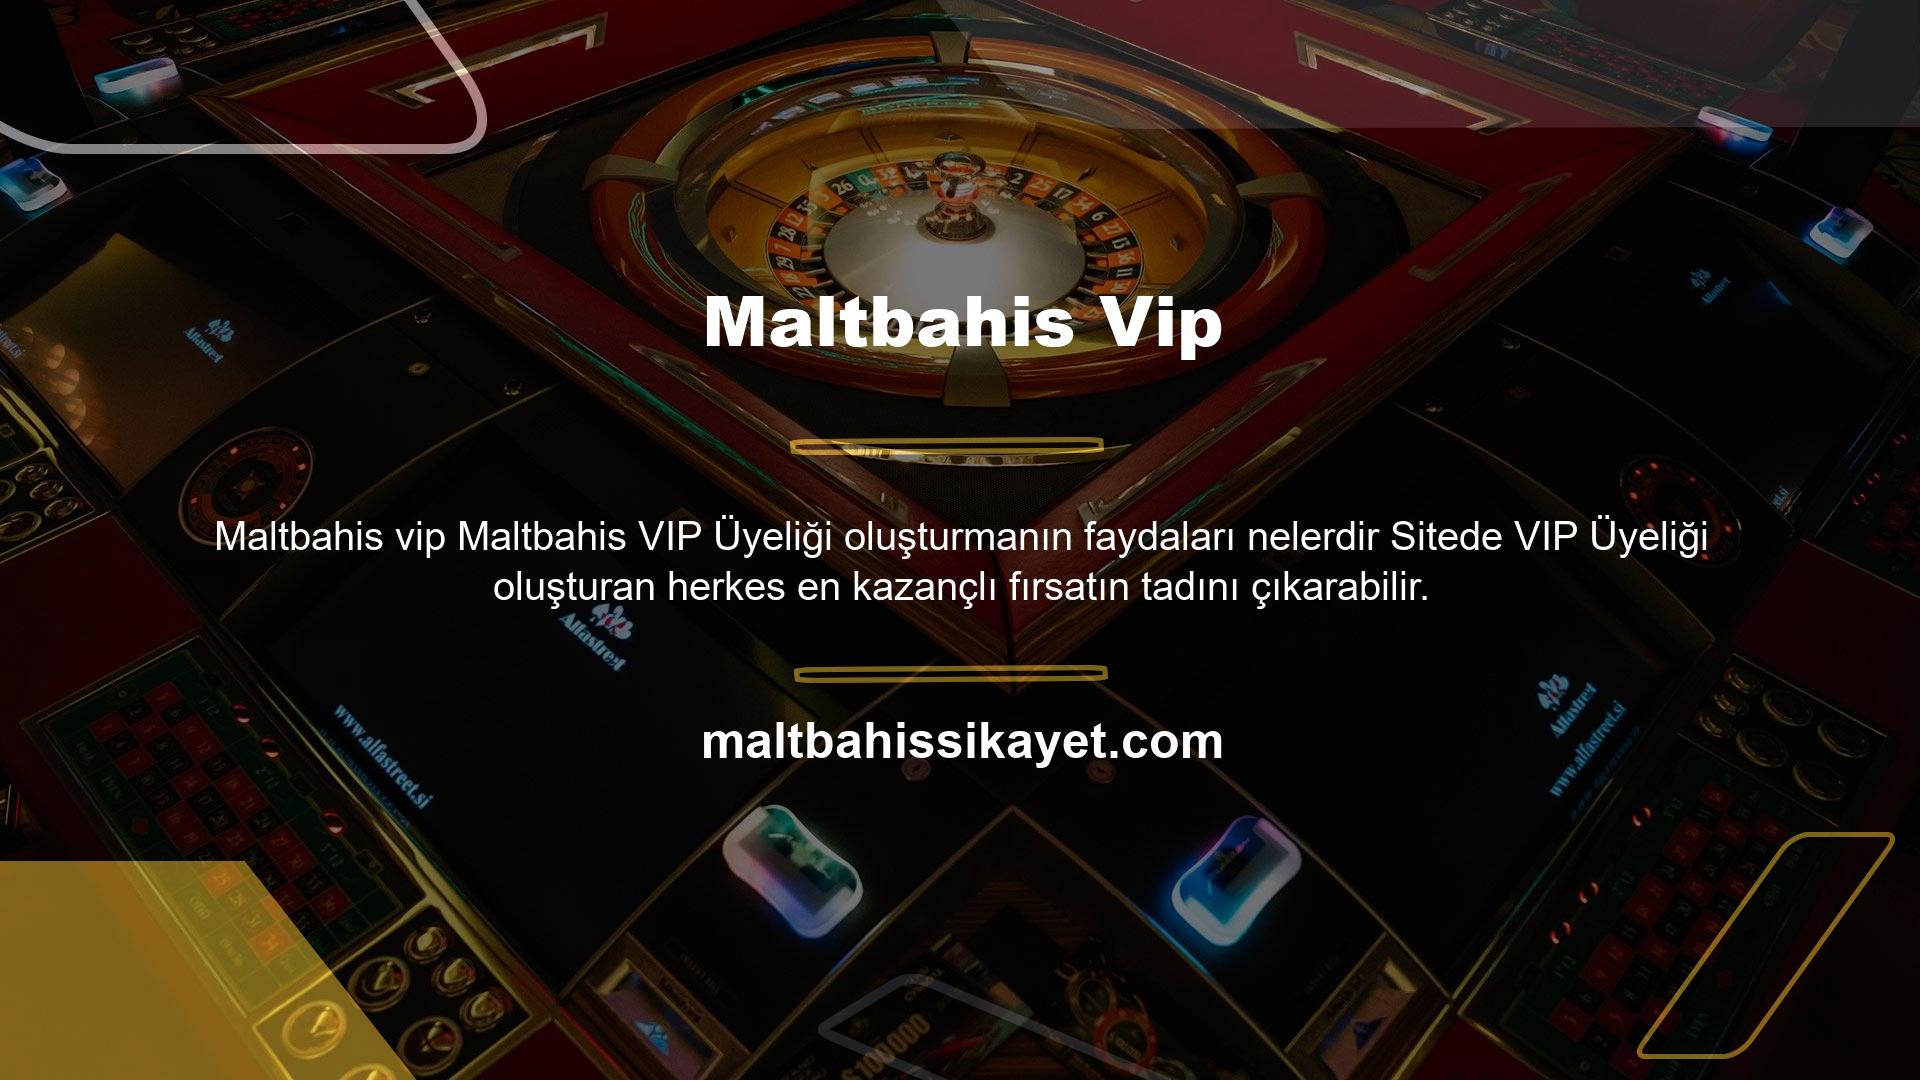 Birkaç hızlı adımda bir Maltbahis VIP üye hesabı açabilirsiniz